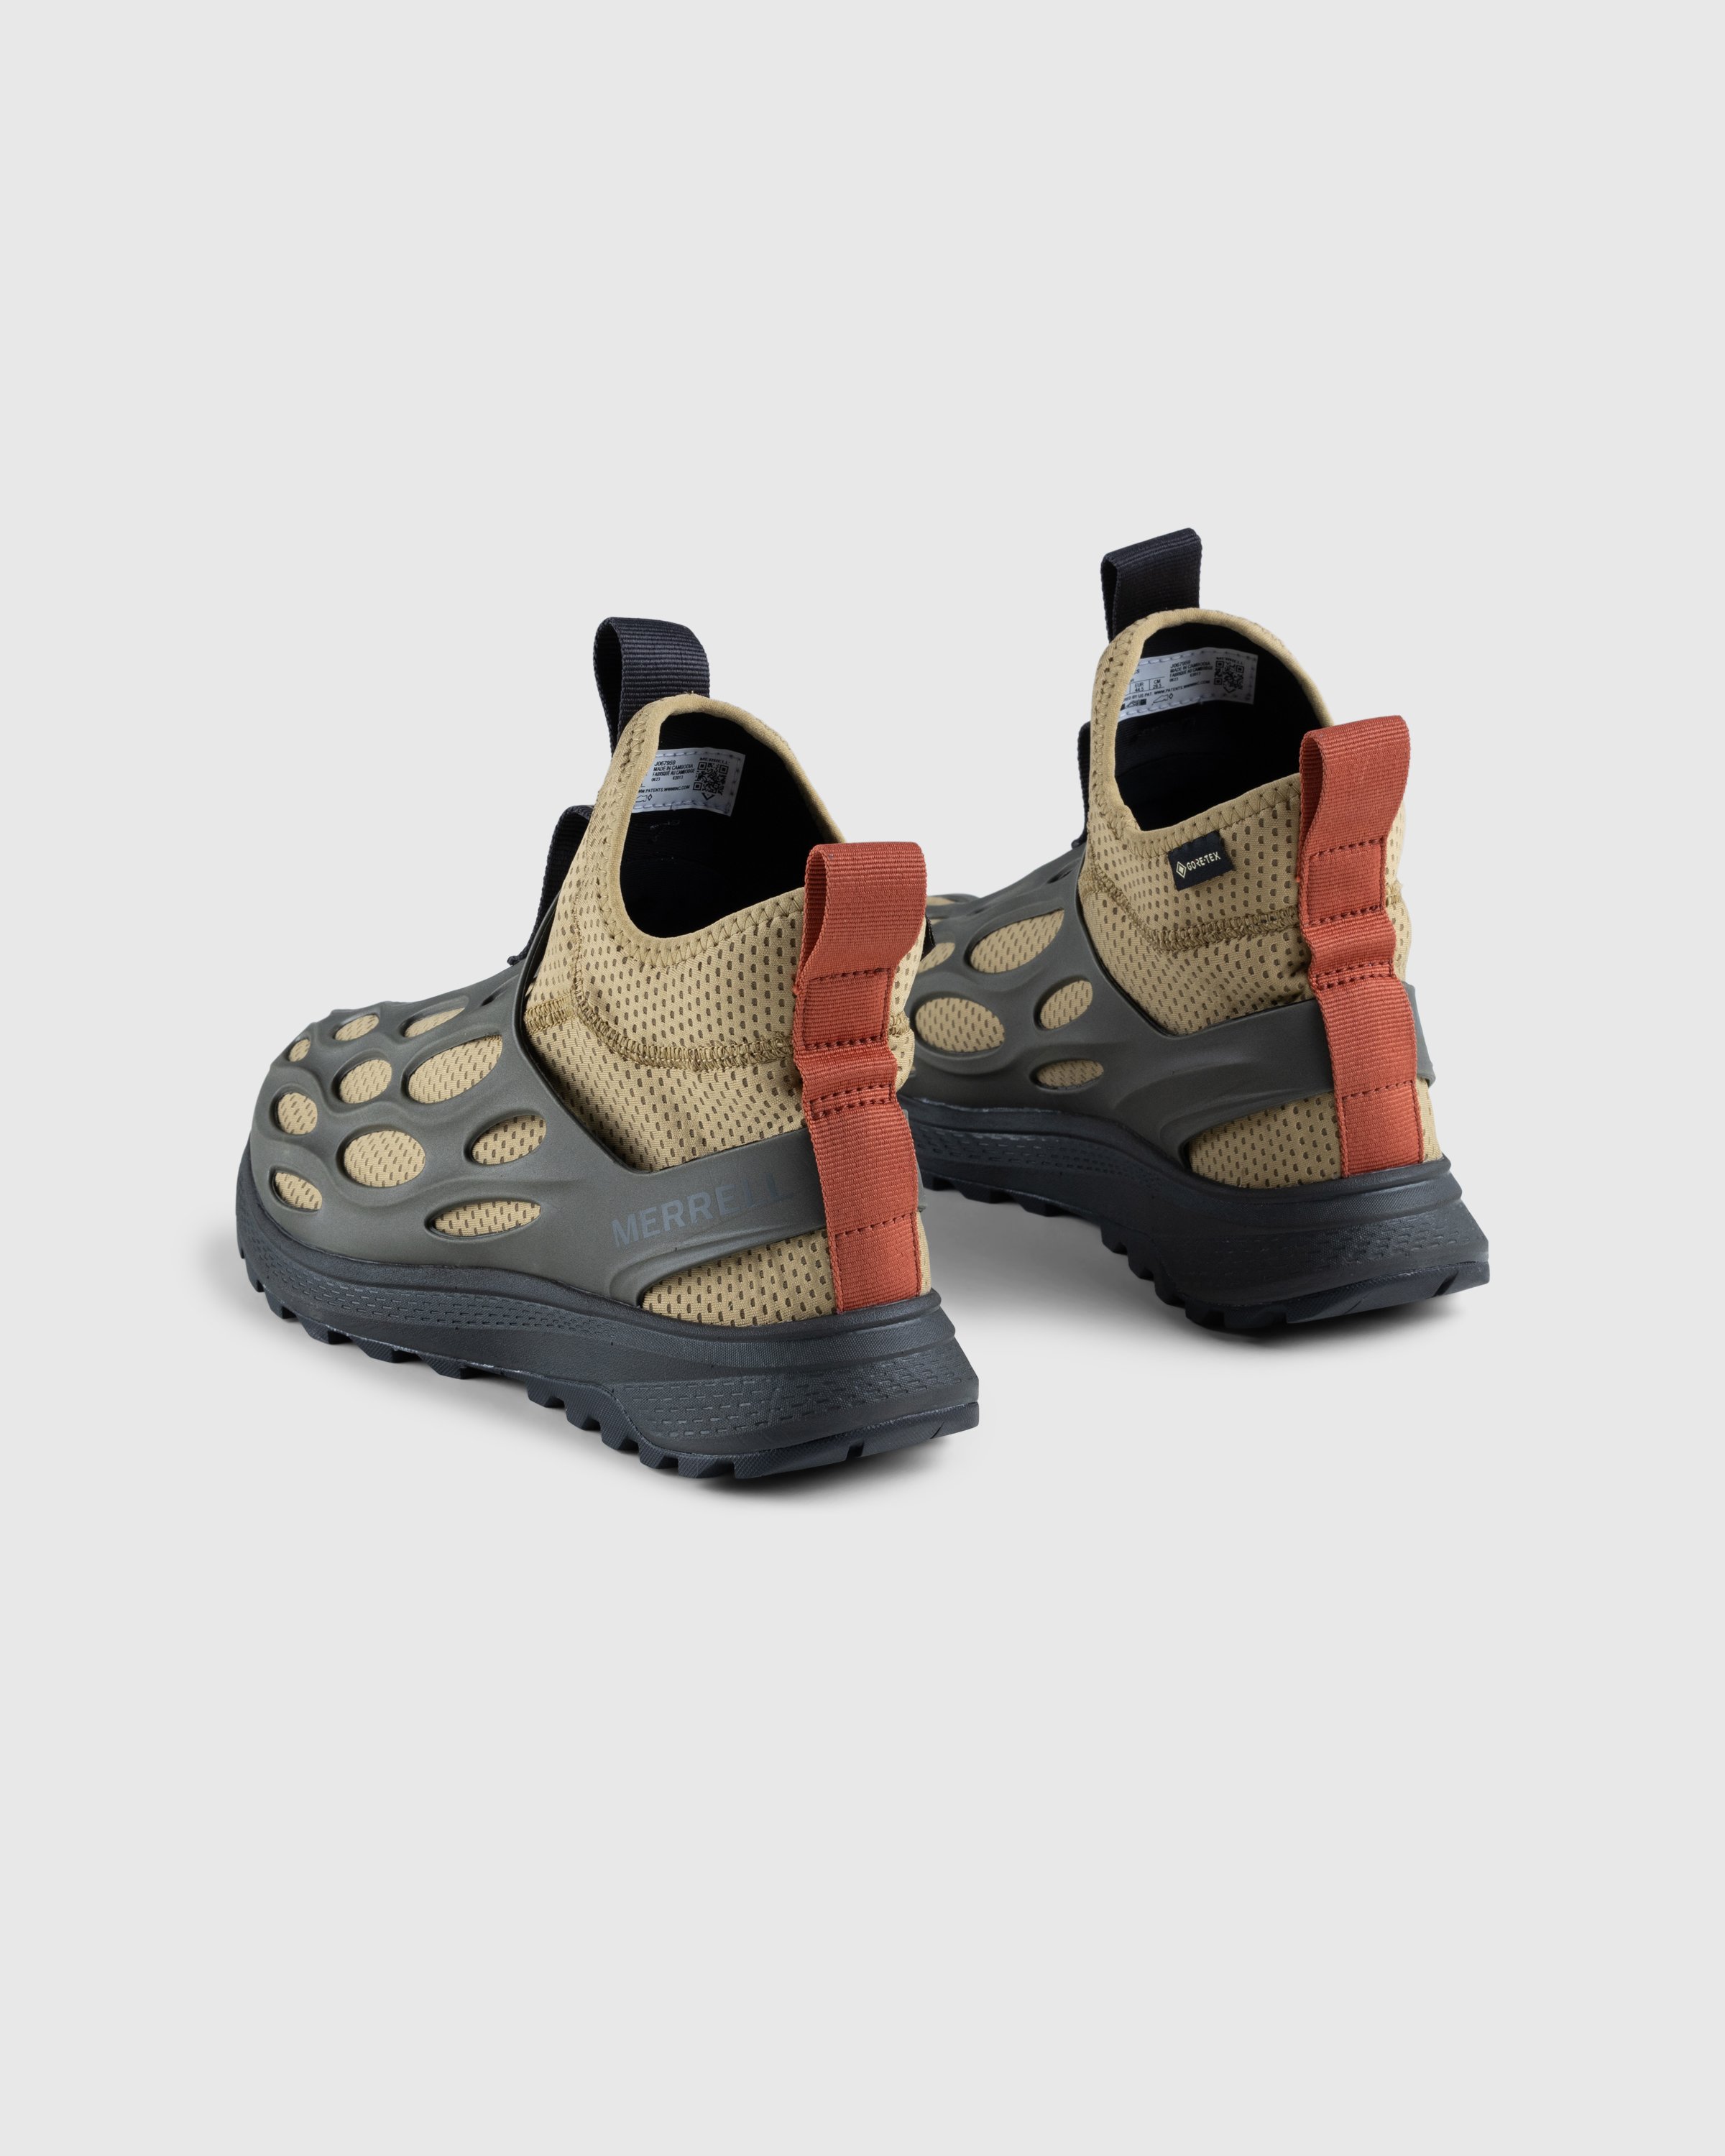 Merrell - HYDRO RUNNER MID GTX SE - Footwear - Green - Image 4